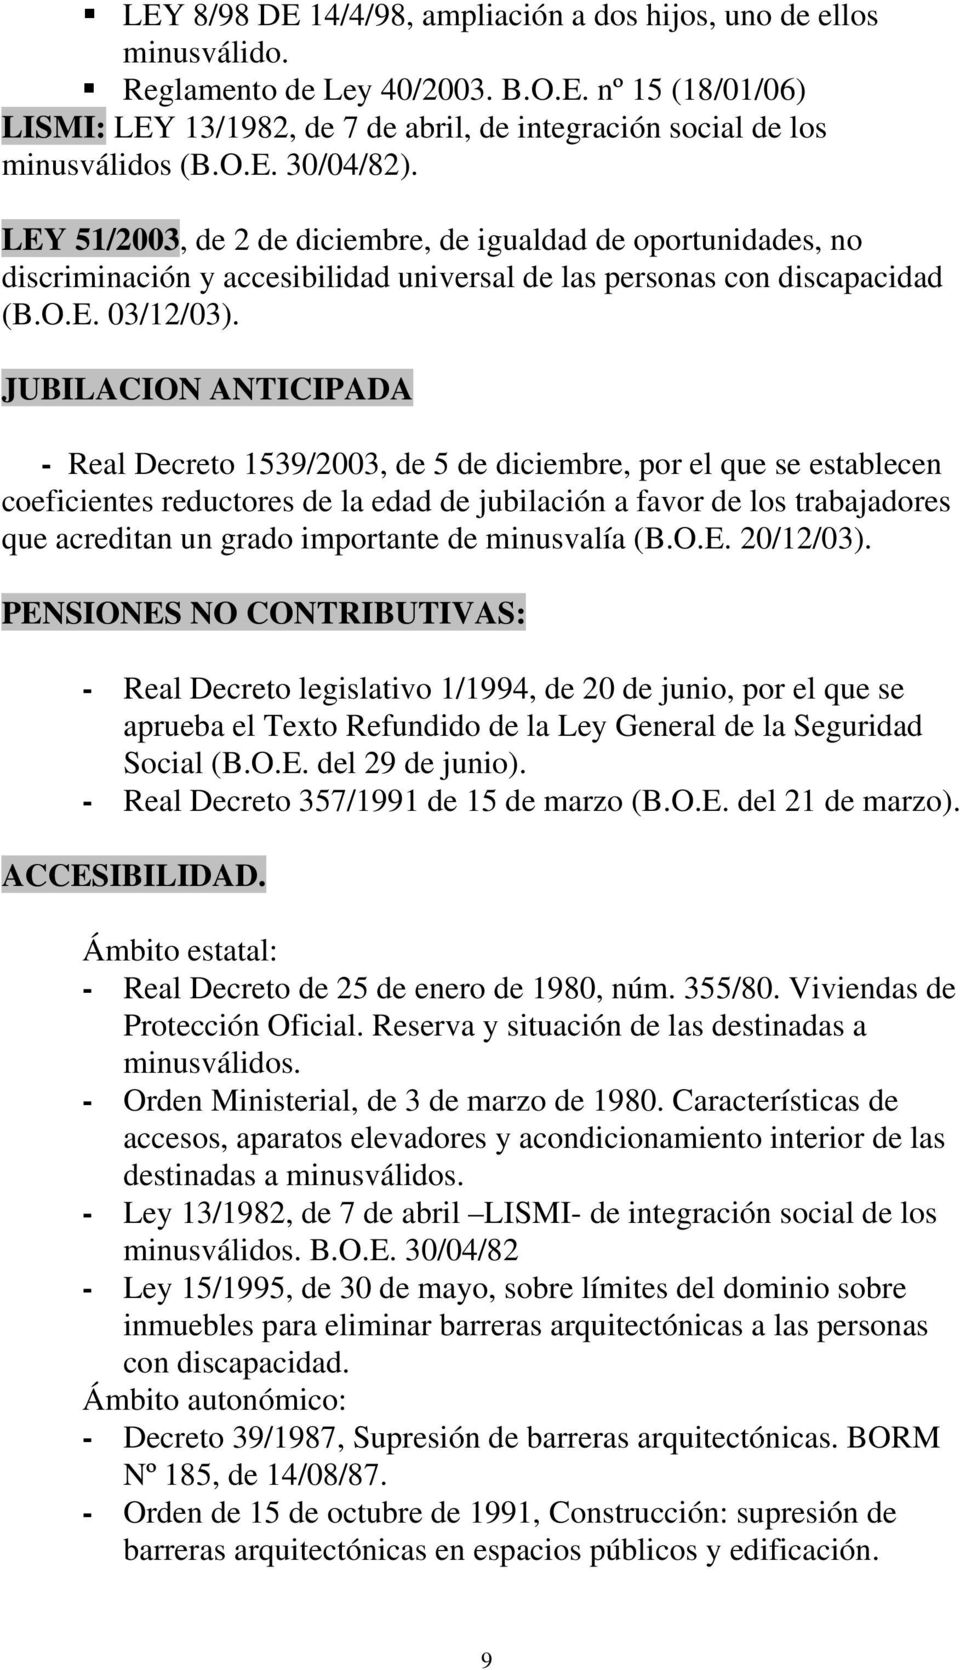 JUBILACION ANTICIPADA - Real Decreto 1539/2003, de 5 de diciembre, por el que se establecen coeficientes reductores de la edad de jubilación a favor de los trabajadores que acreditan un grado